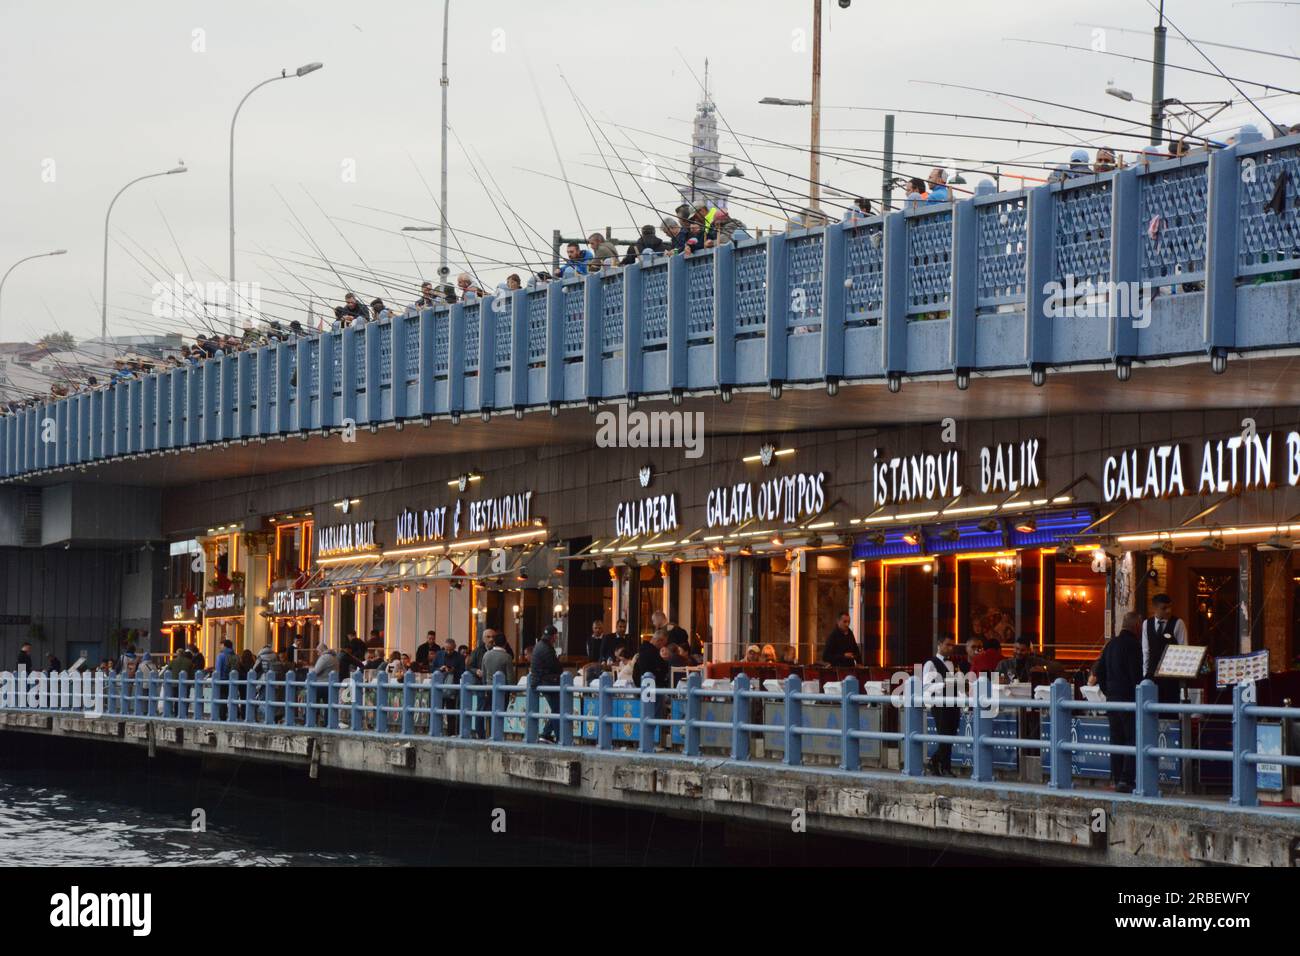 Une ligne de restaurants turcs et de pêcheurs pêchant le long du pont de Galata sur la Corne d'Or et le détroit du Bosphore, Istanbul, Turquie / Turkiye. Banque D'Images